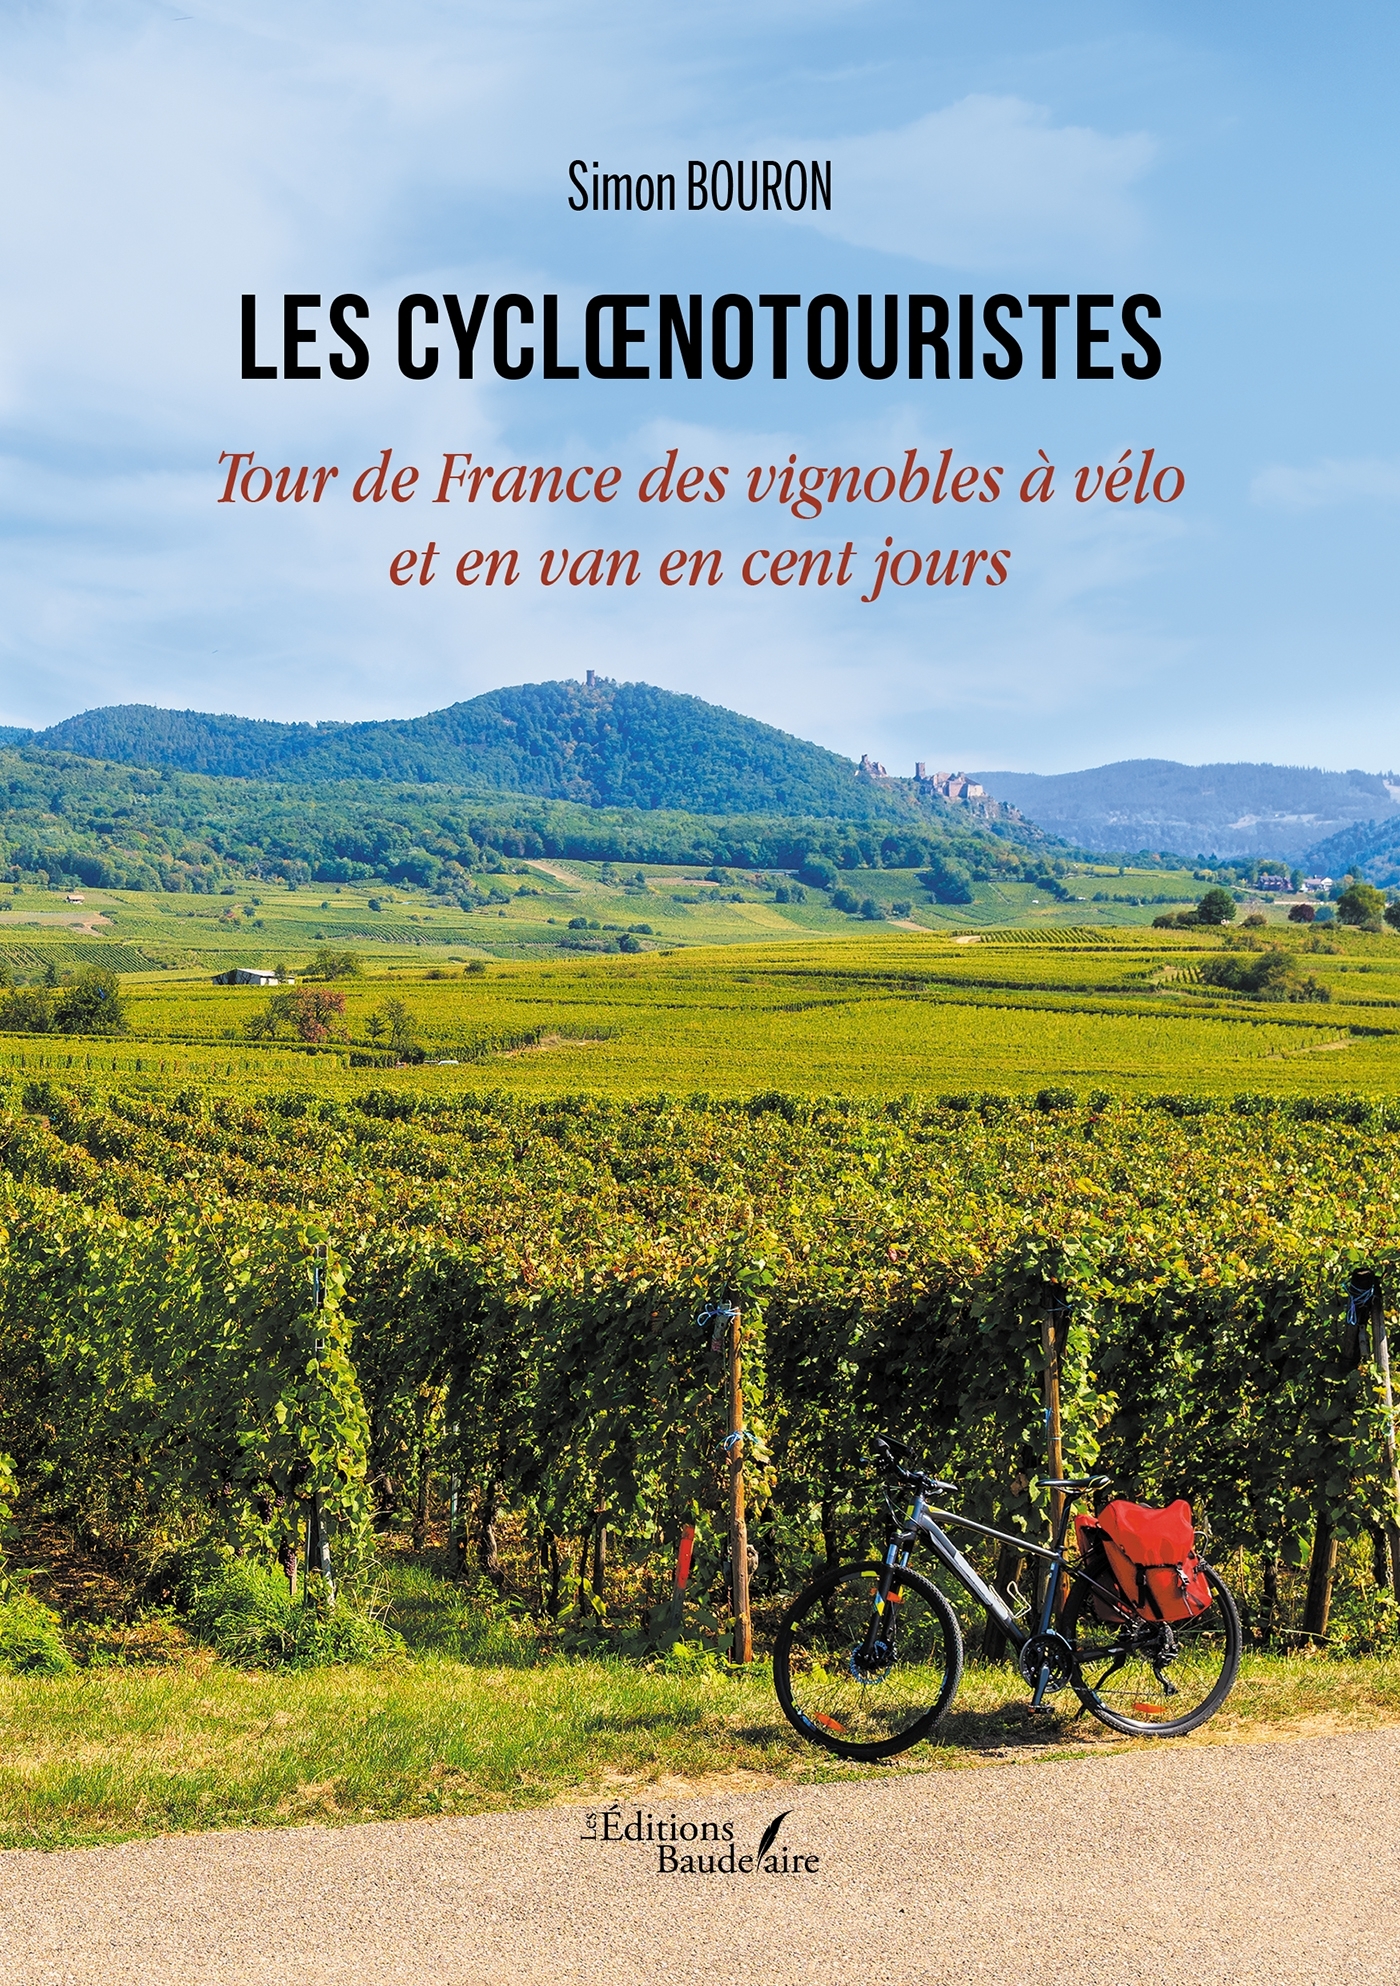 Les cycloenotouristes - Tour de France des vignobles à vélo et en van en cent jours (9791020356840-front-cover)